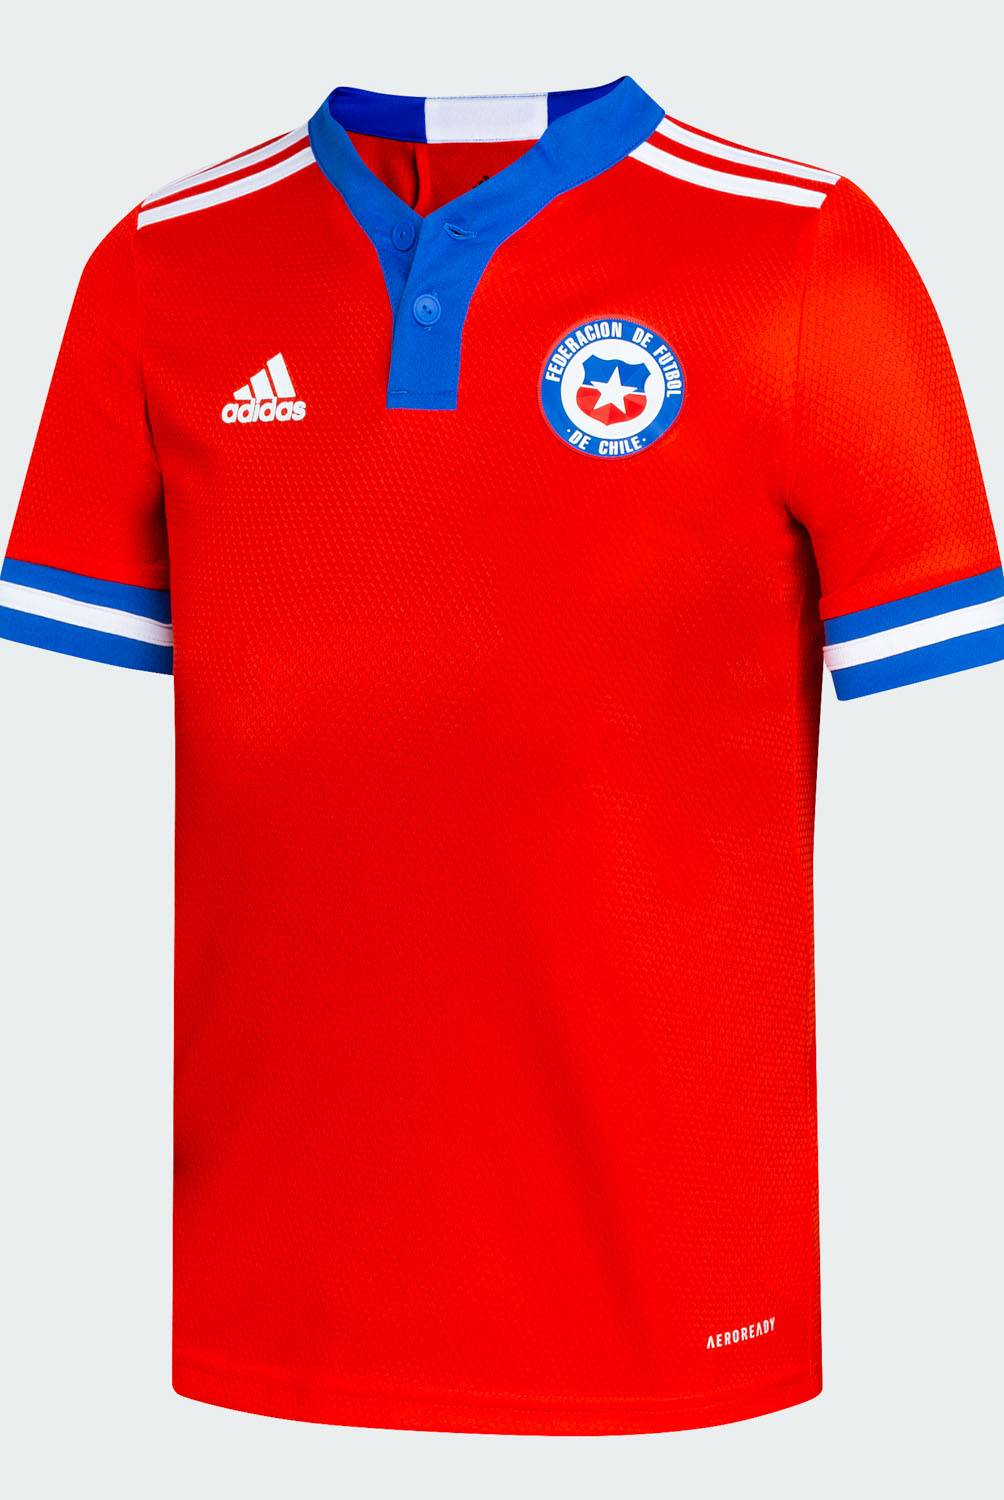 Adidas - Adidas Camiseta de Fútbol Selección Chilena Niño